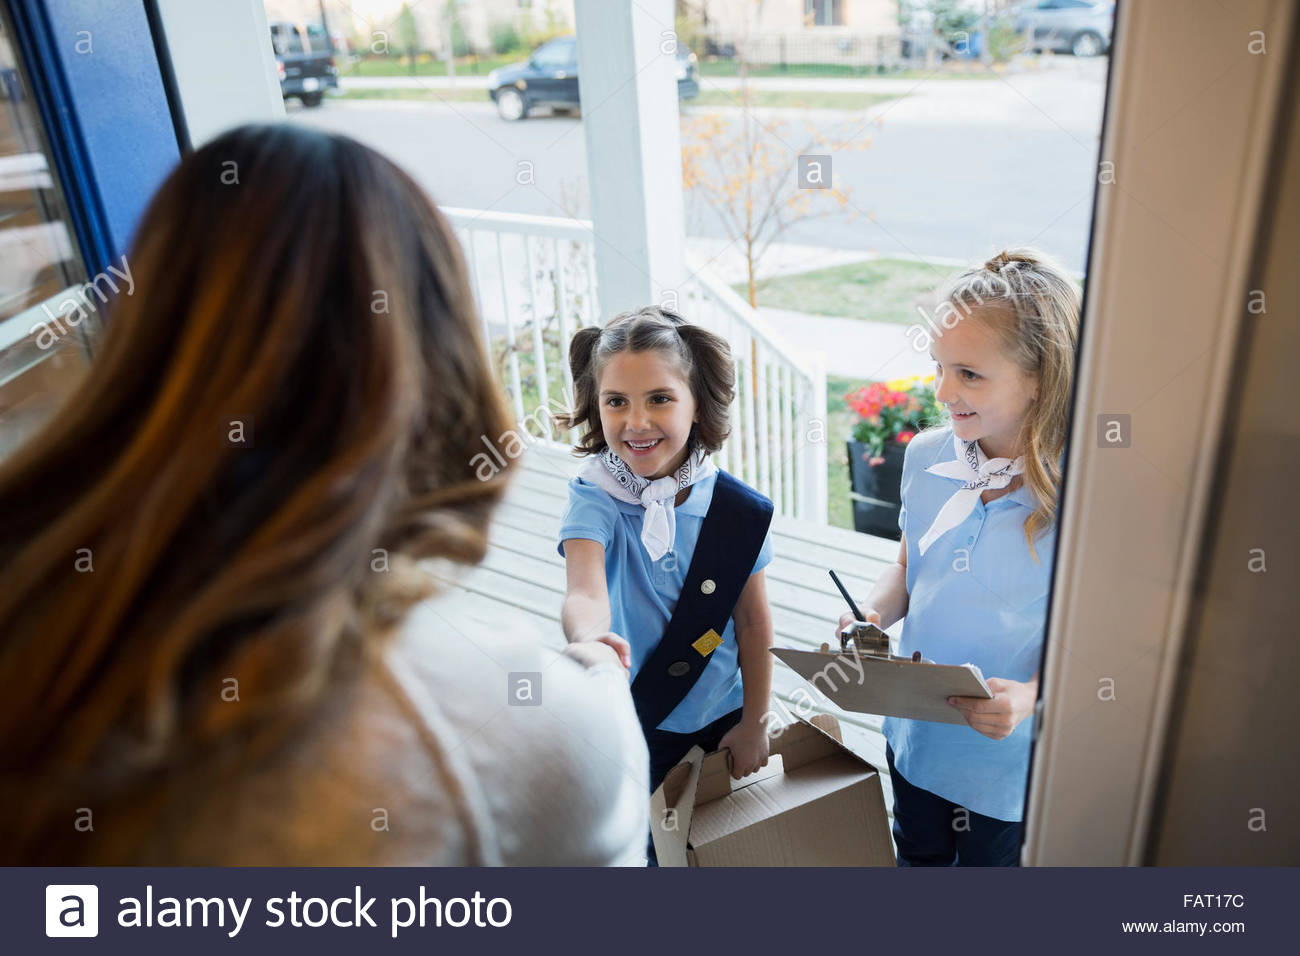 Girl Scouts vendiendo cookies mujer en puerta frontal Foto de stock